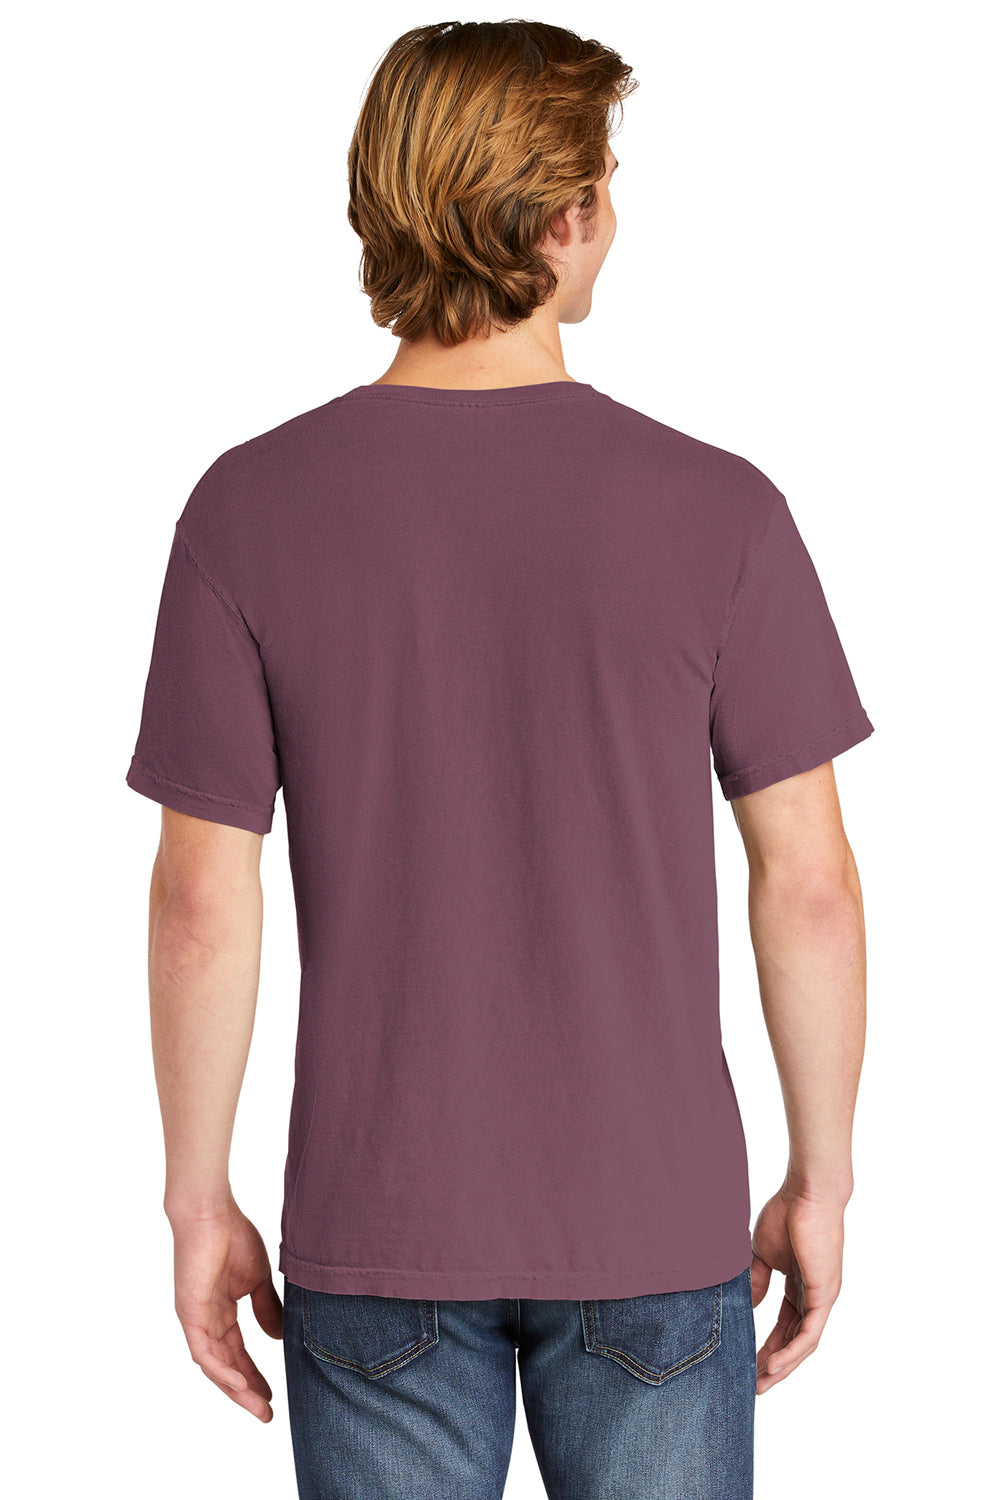 Comfort Colors 6030/6030CC Mens Short Sleeve Crewneck T-Shirt w/ Pocket Berry Back